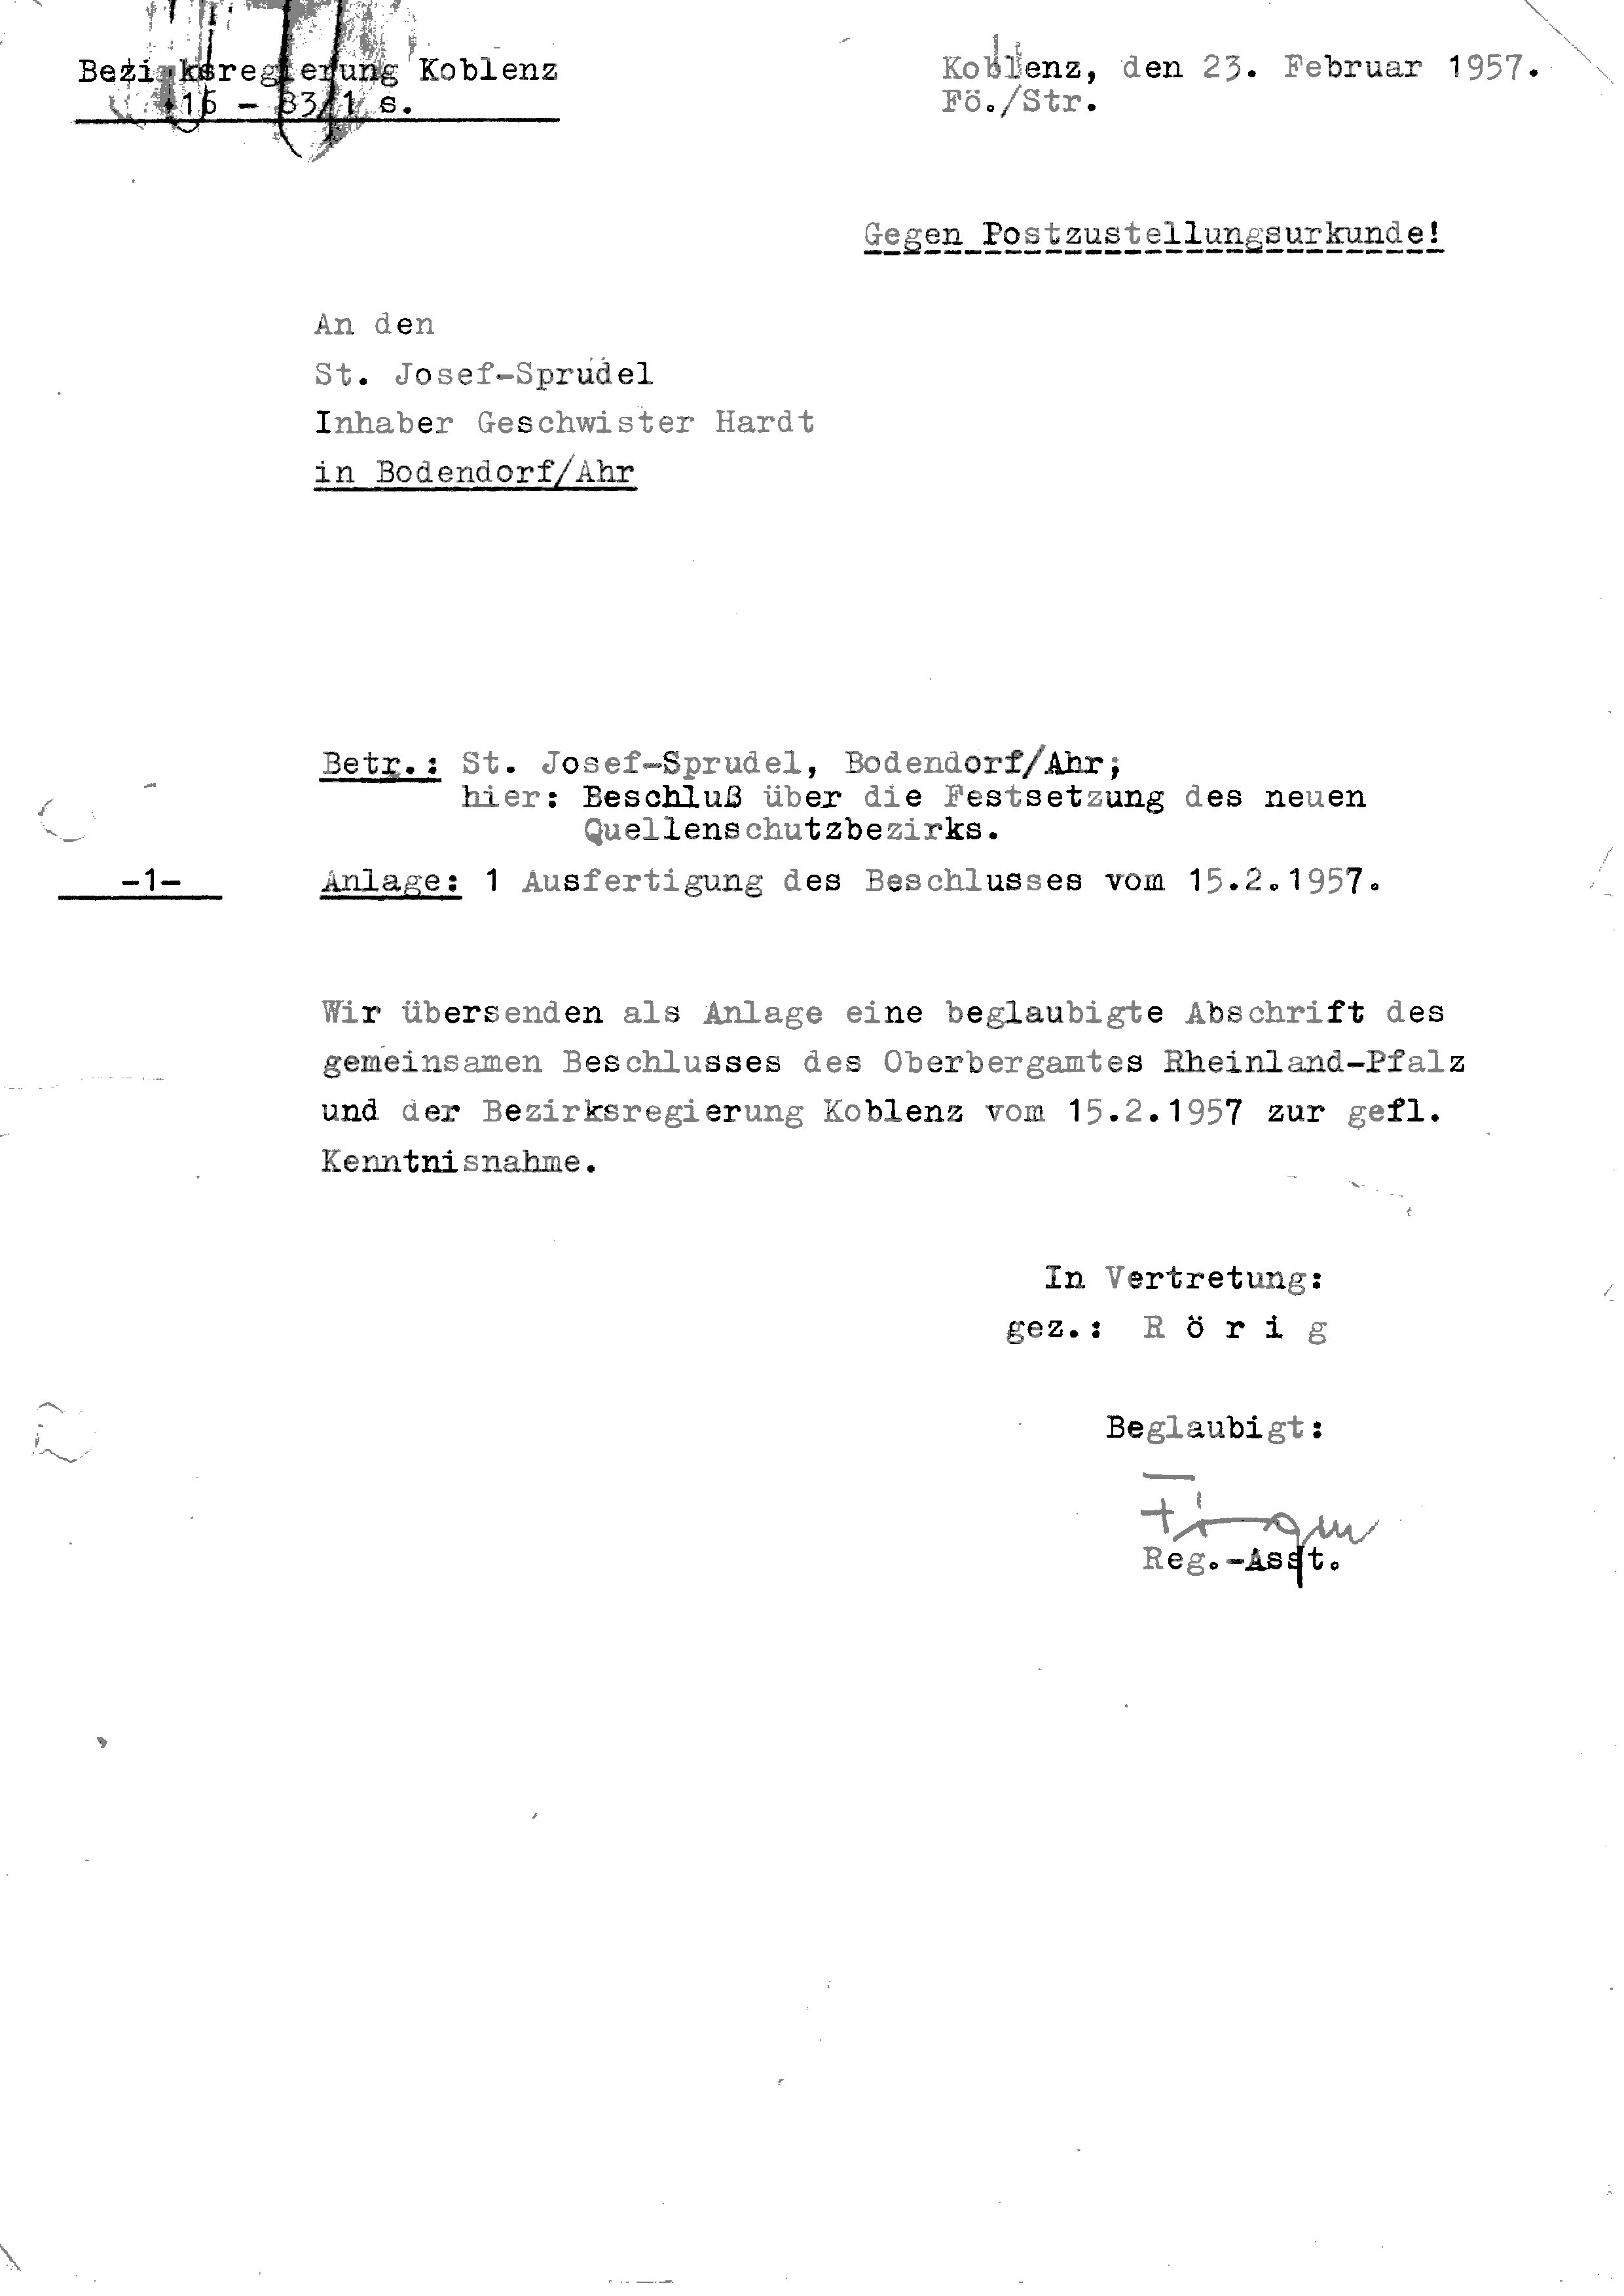 Beschluss über die Festsetzung des neuen Quellschutzbezirks vom 15.02.1957 (Heimatarchiv Bad Bodendorf CC BY-NC-SA)